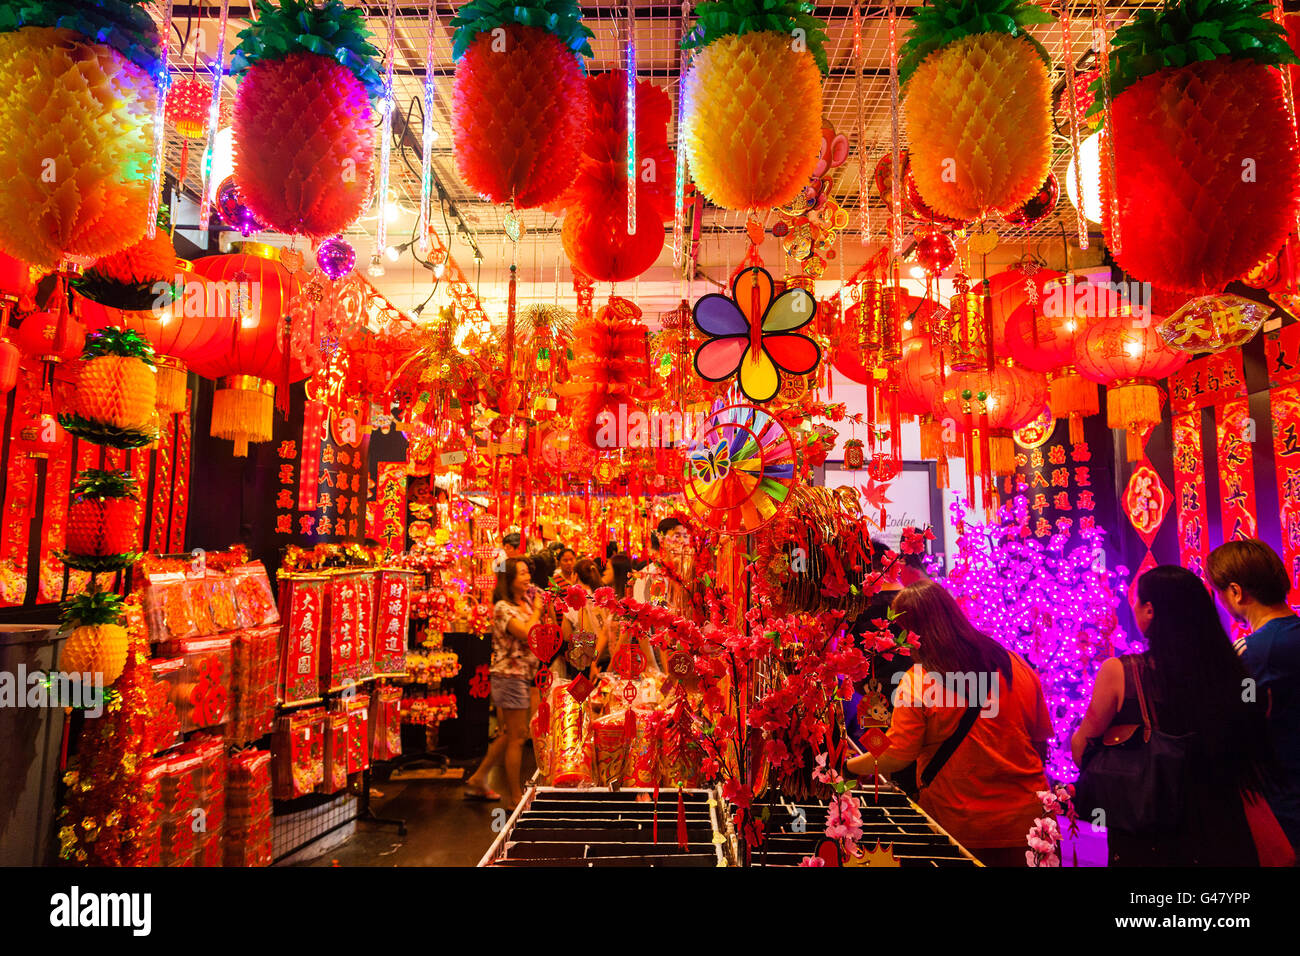 Singapur, Singapur - 17. Januar 2016: Ein Geschäft in Chinatown verkauft Laternen und Dekorationen für chinesischen Neujahrsfest. Stockfoto